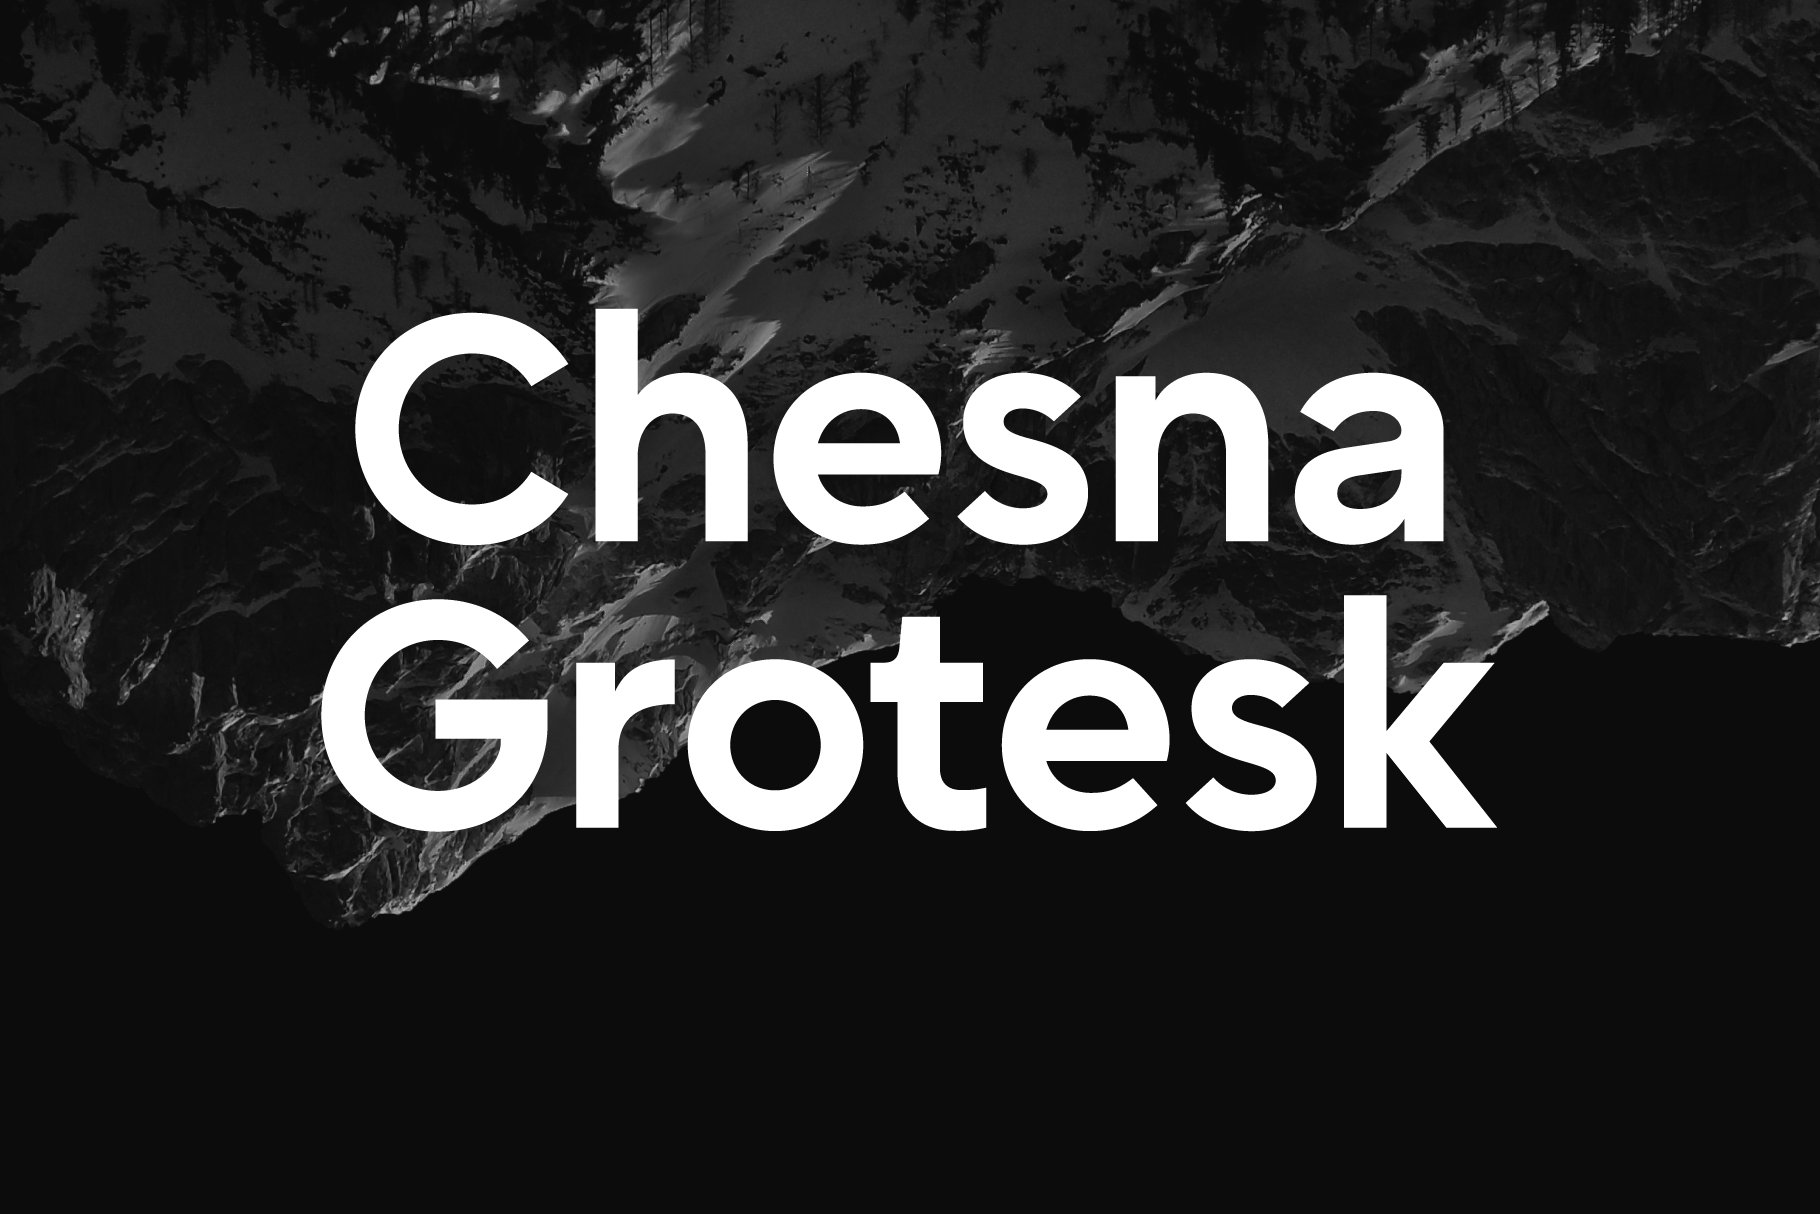 Chesna Grotesk Font